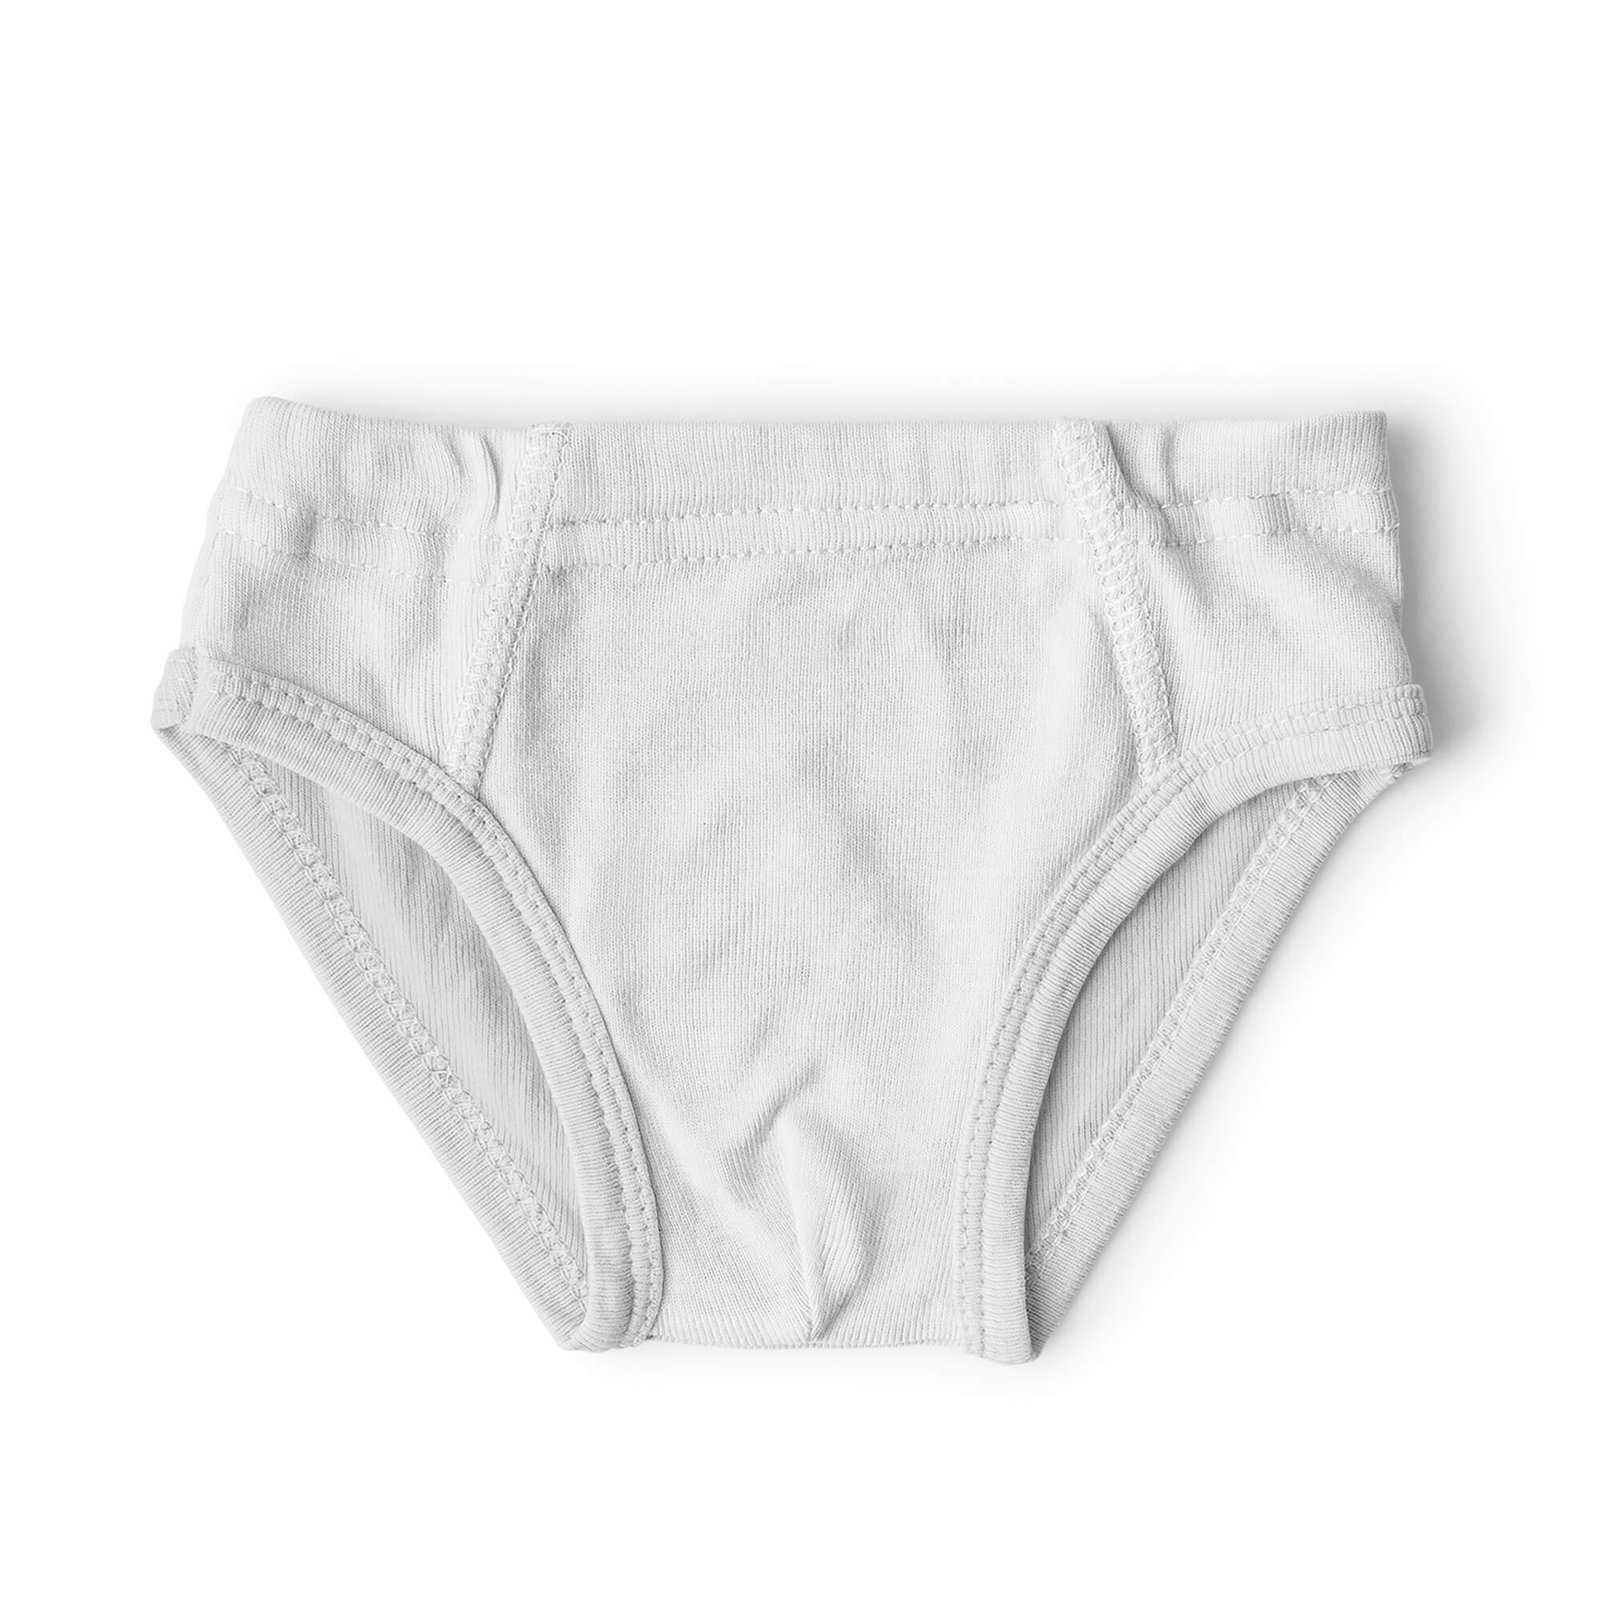 Blank Free Kids Underwear Mockup PSD Template